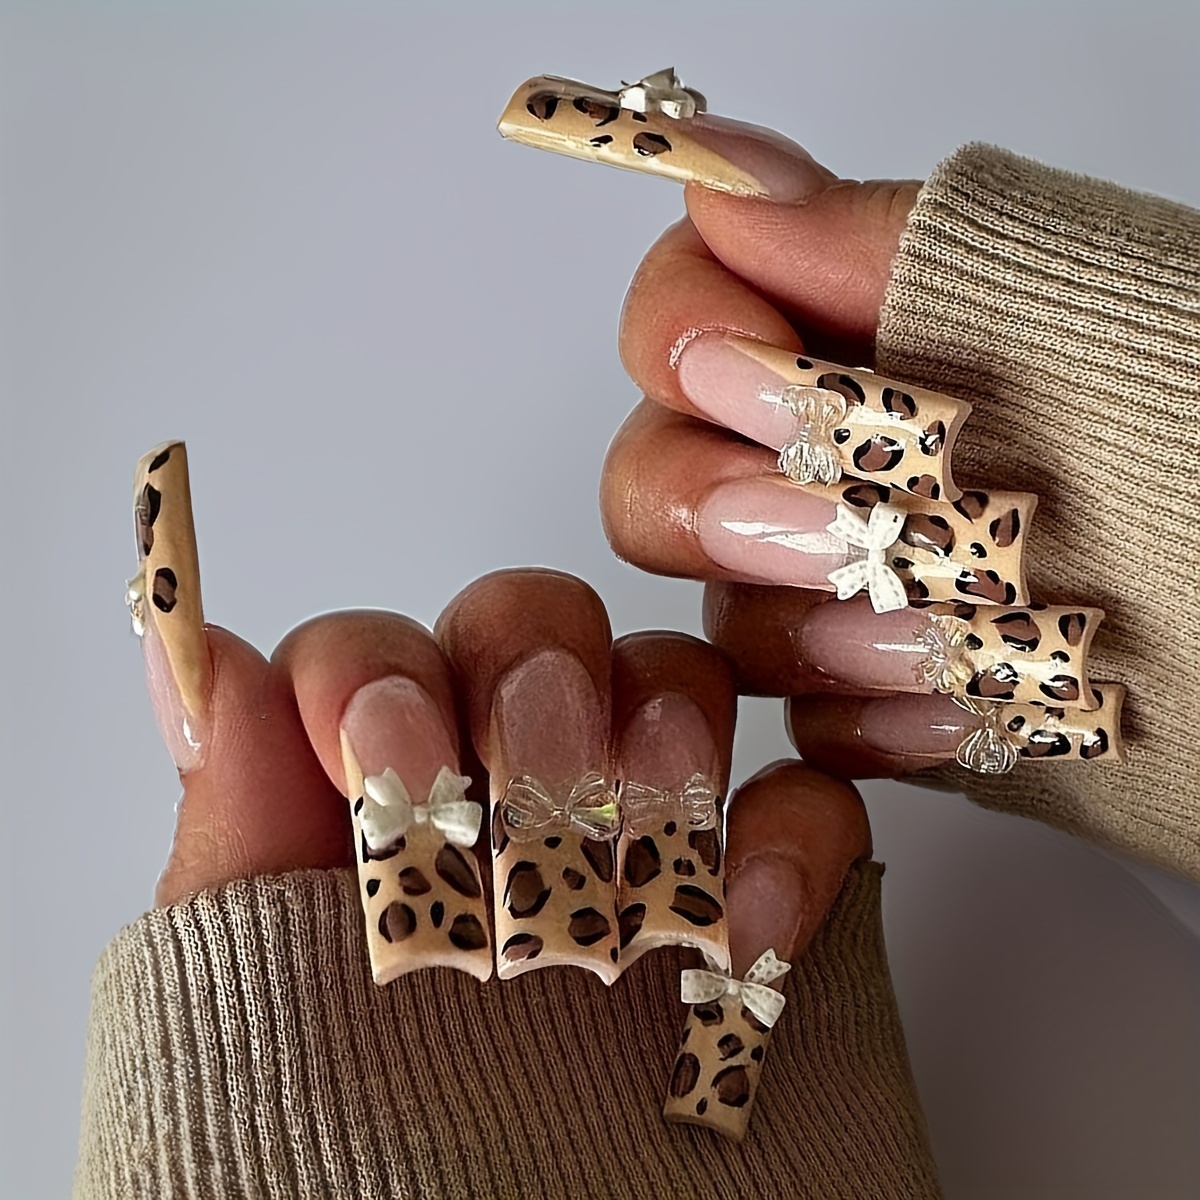 Leopard Print Press on Nails, Animal Print, Cheetah Print, Hand Painted  Nail Art, Gel Nails -  Canada